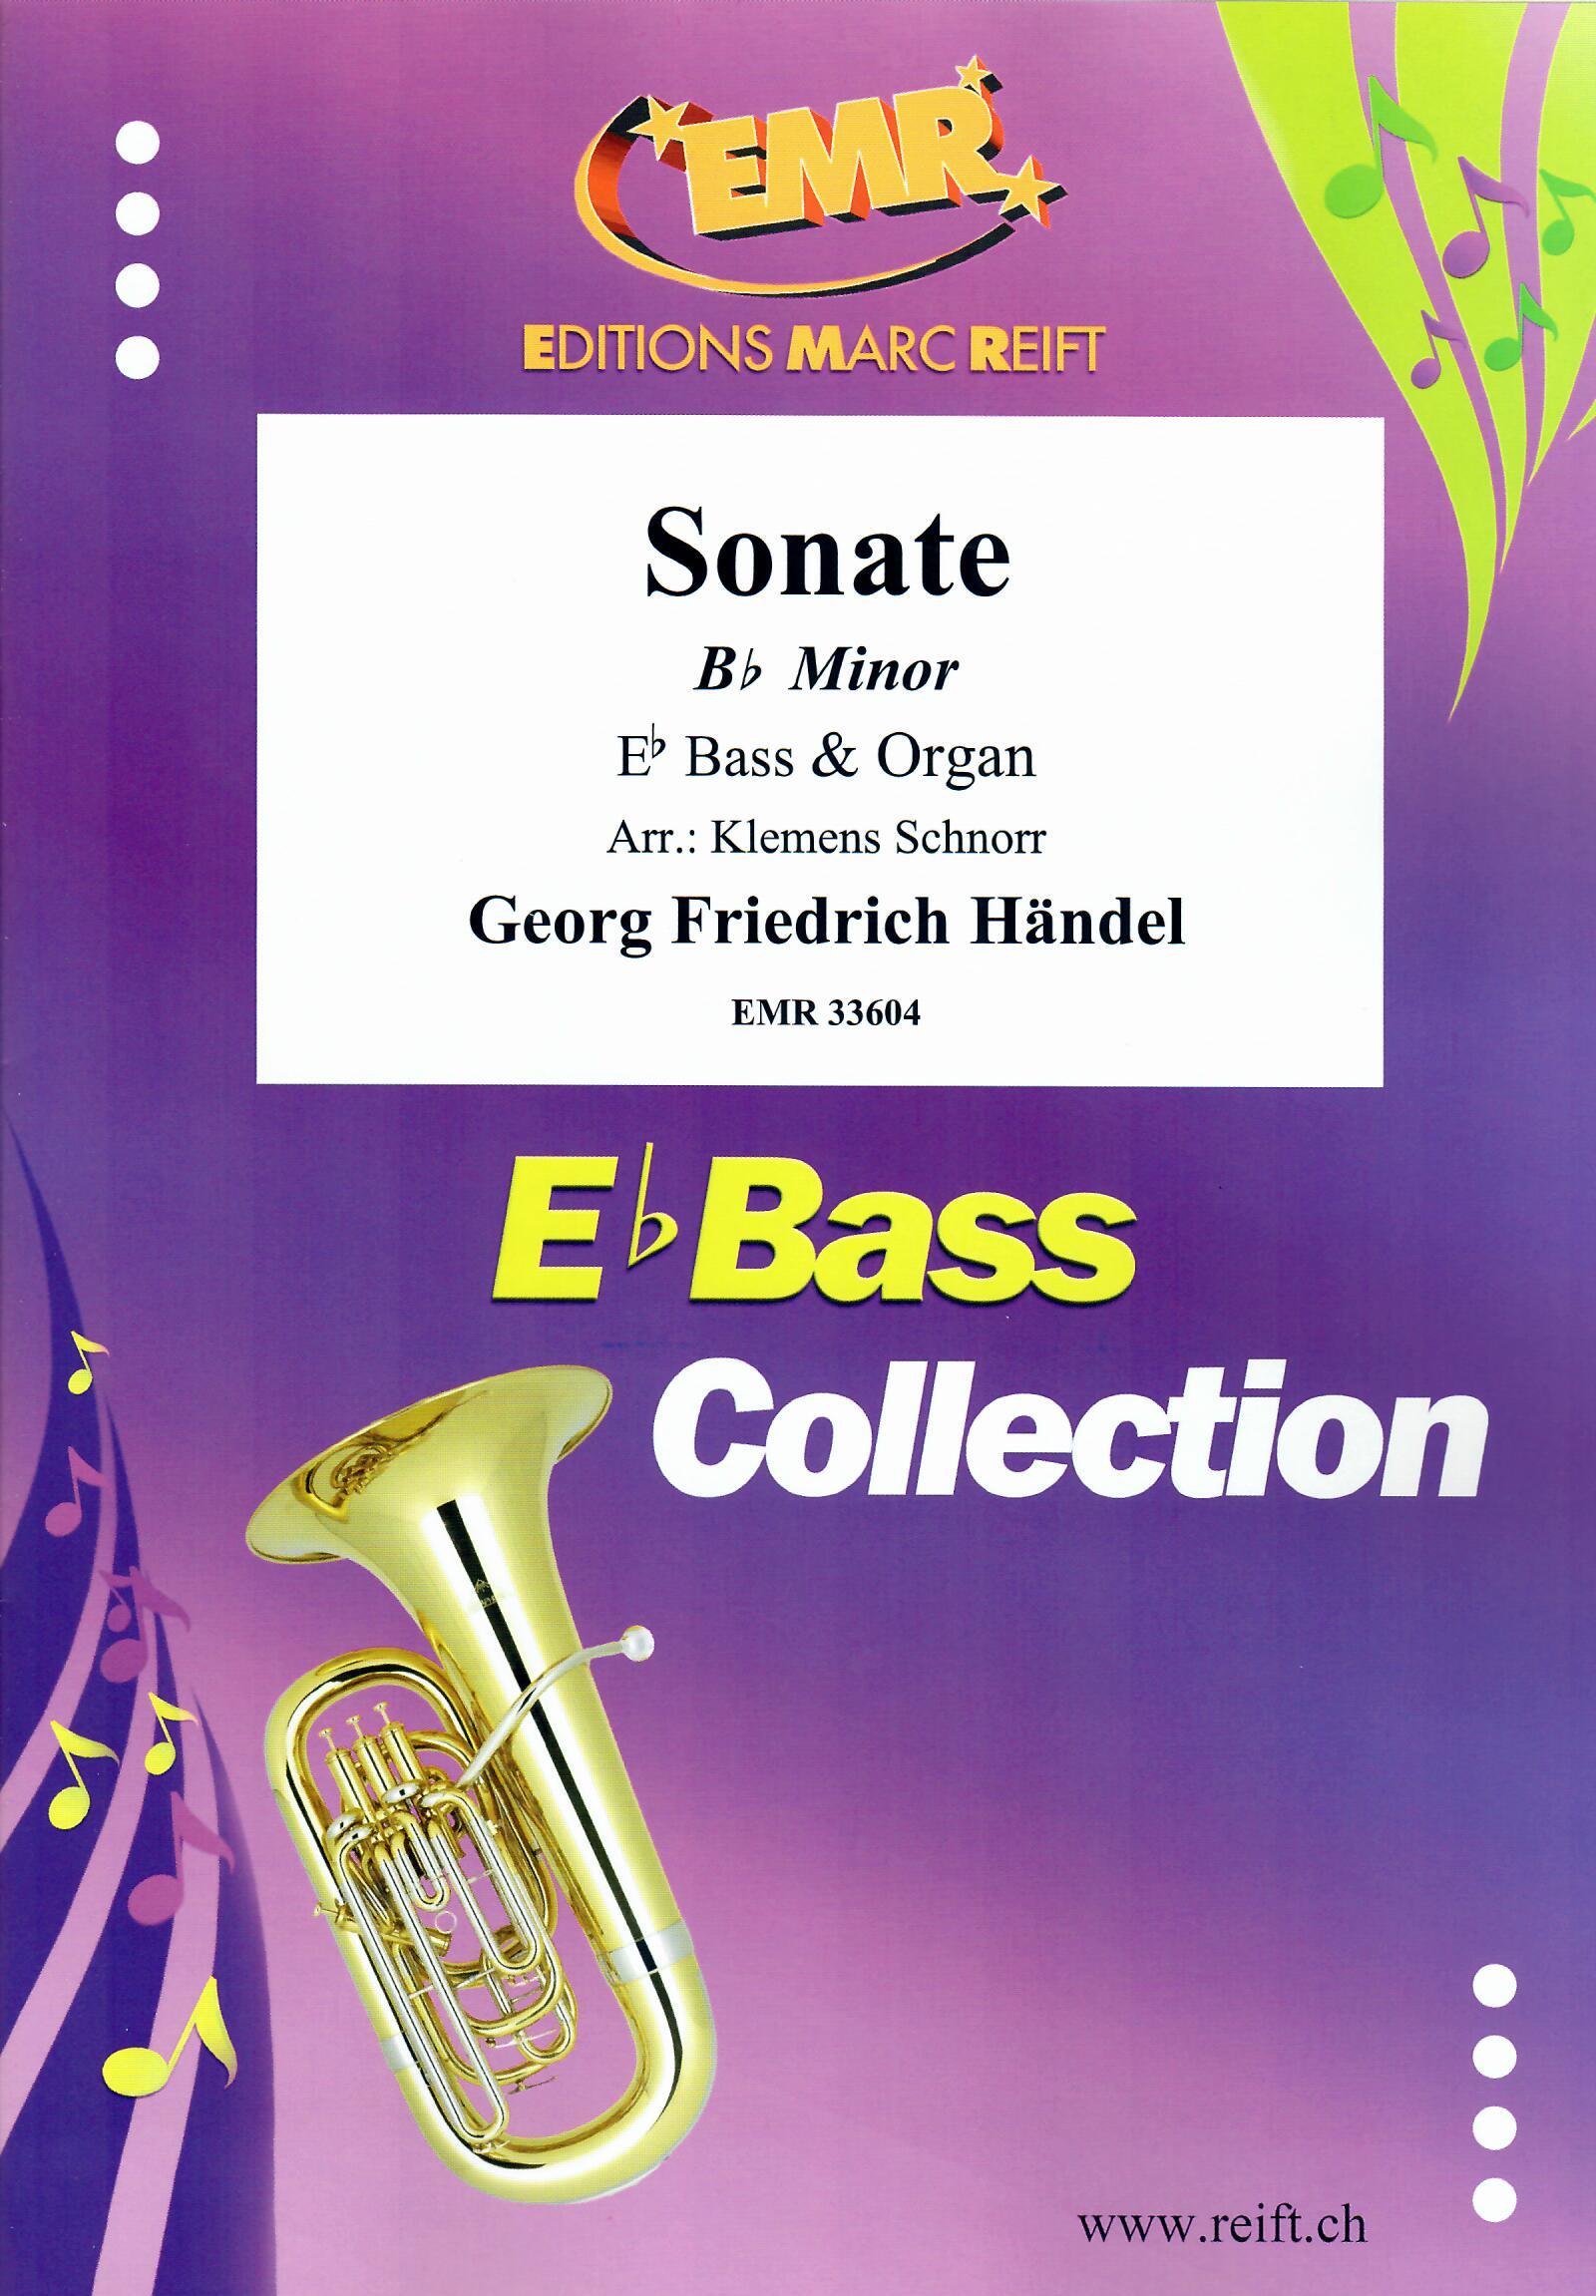 SONATE BB MINOR, SOLOS - E♭. Bass